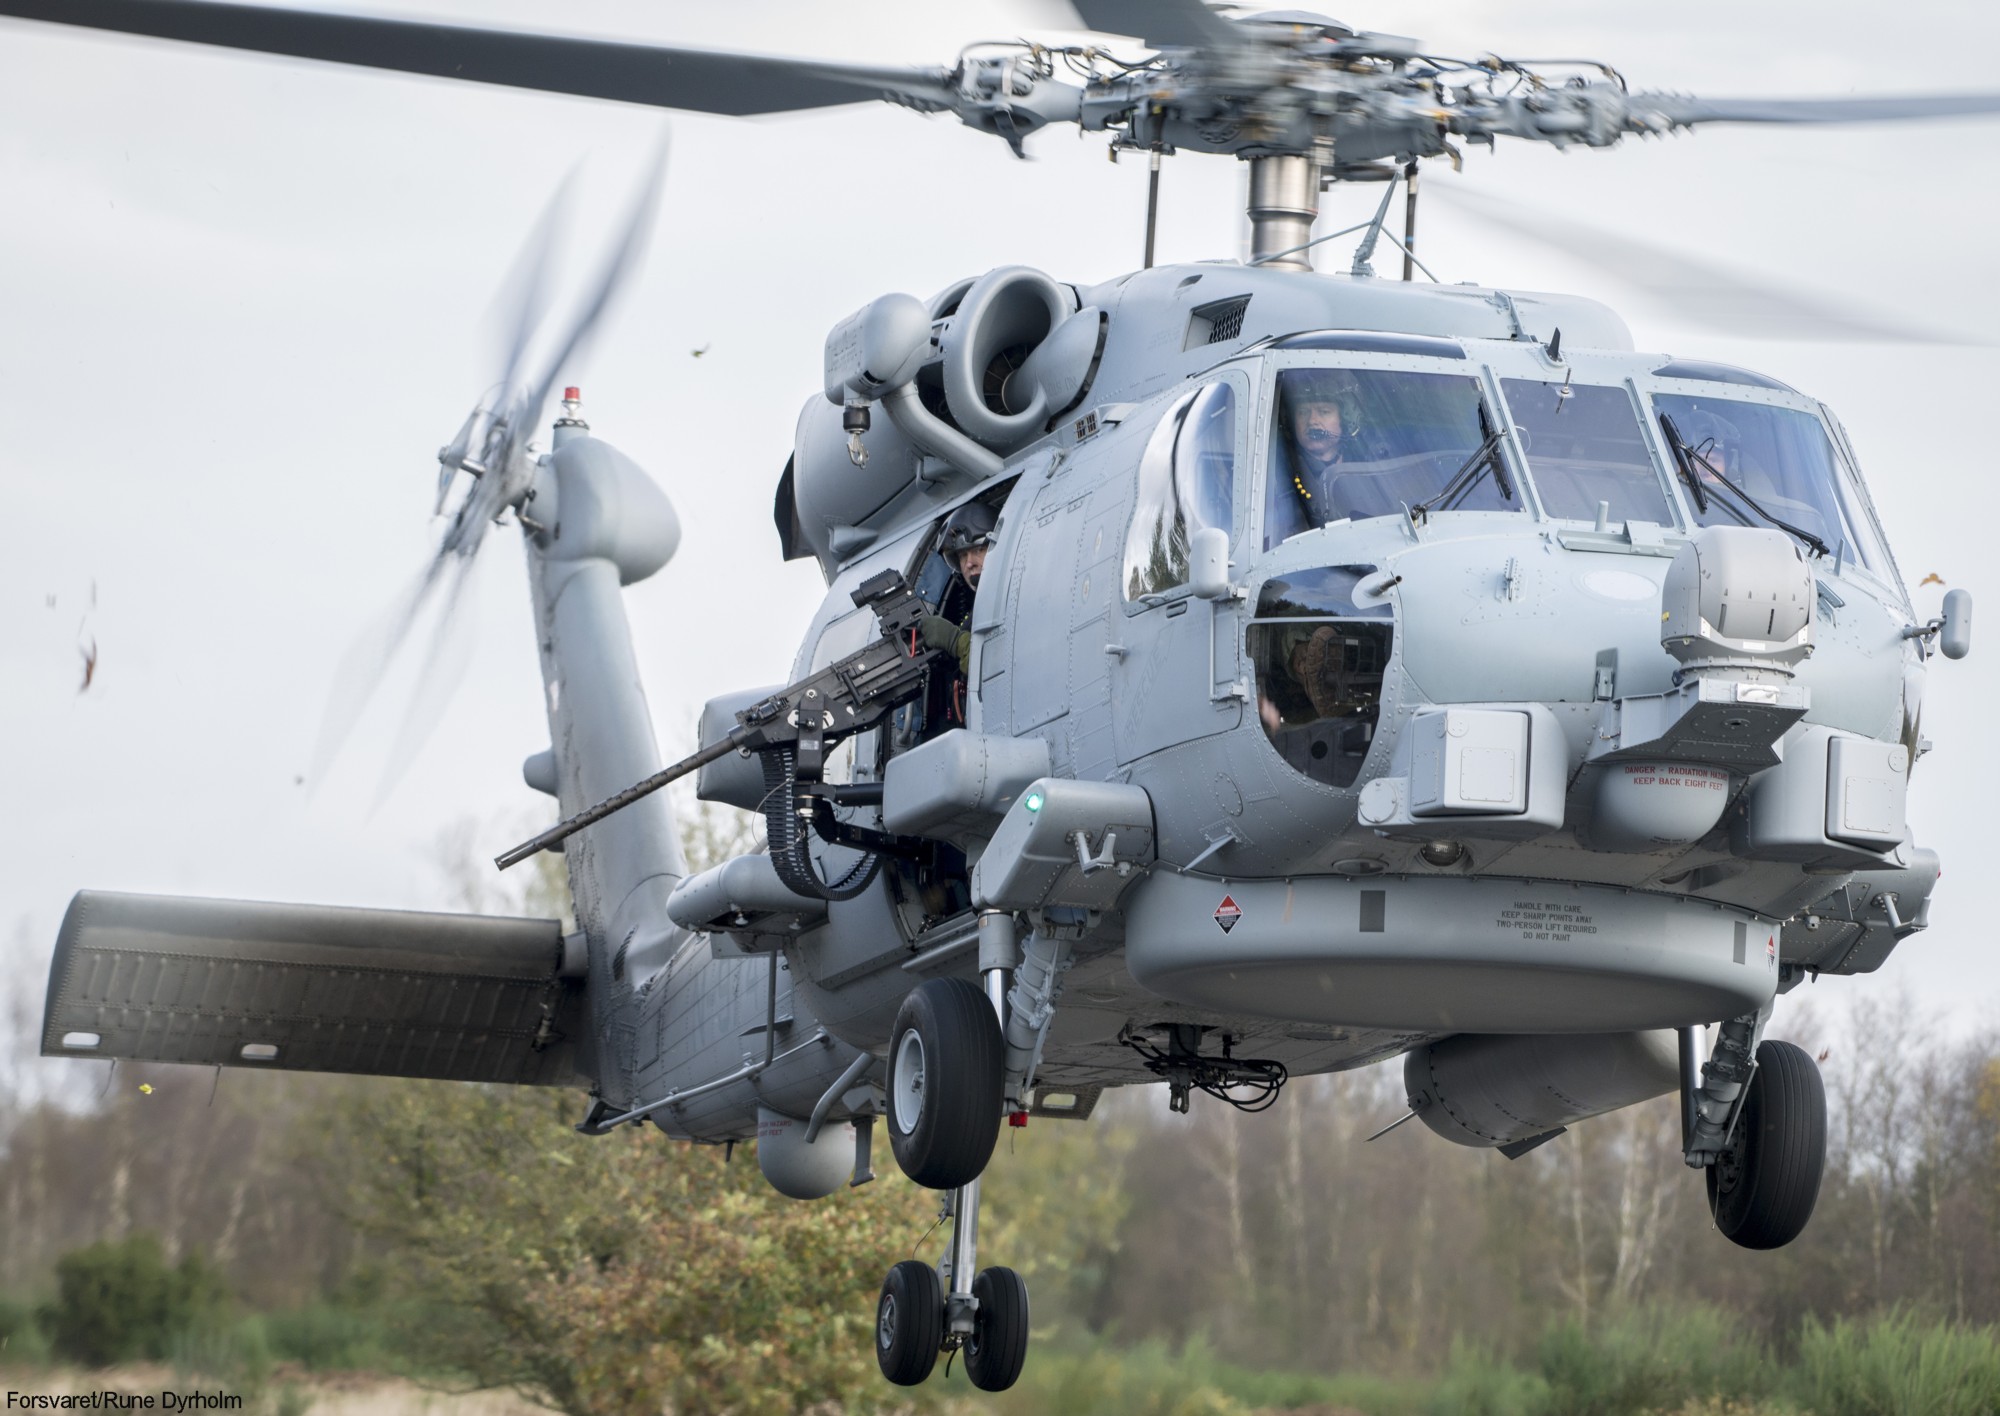 mh-60r seahawk royal danish navy air force flyvevåbnet kongelige danske marine sikorsky helicopter 723 eskadrille squadron karup 21